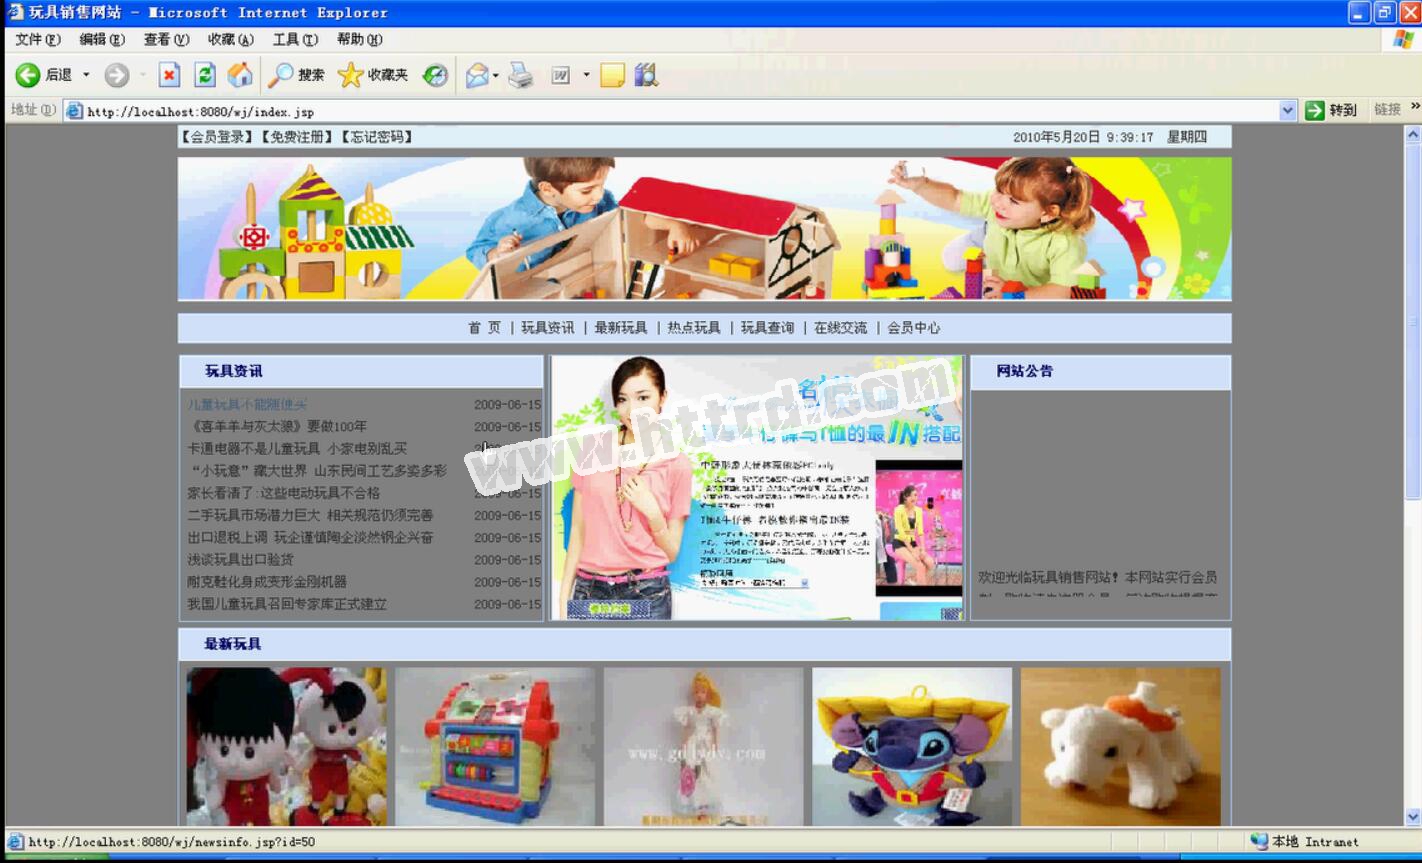 JSP320 网上购物玩具销售网站 sqlserver计算机毕业设计